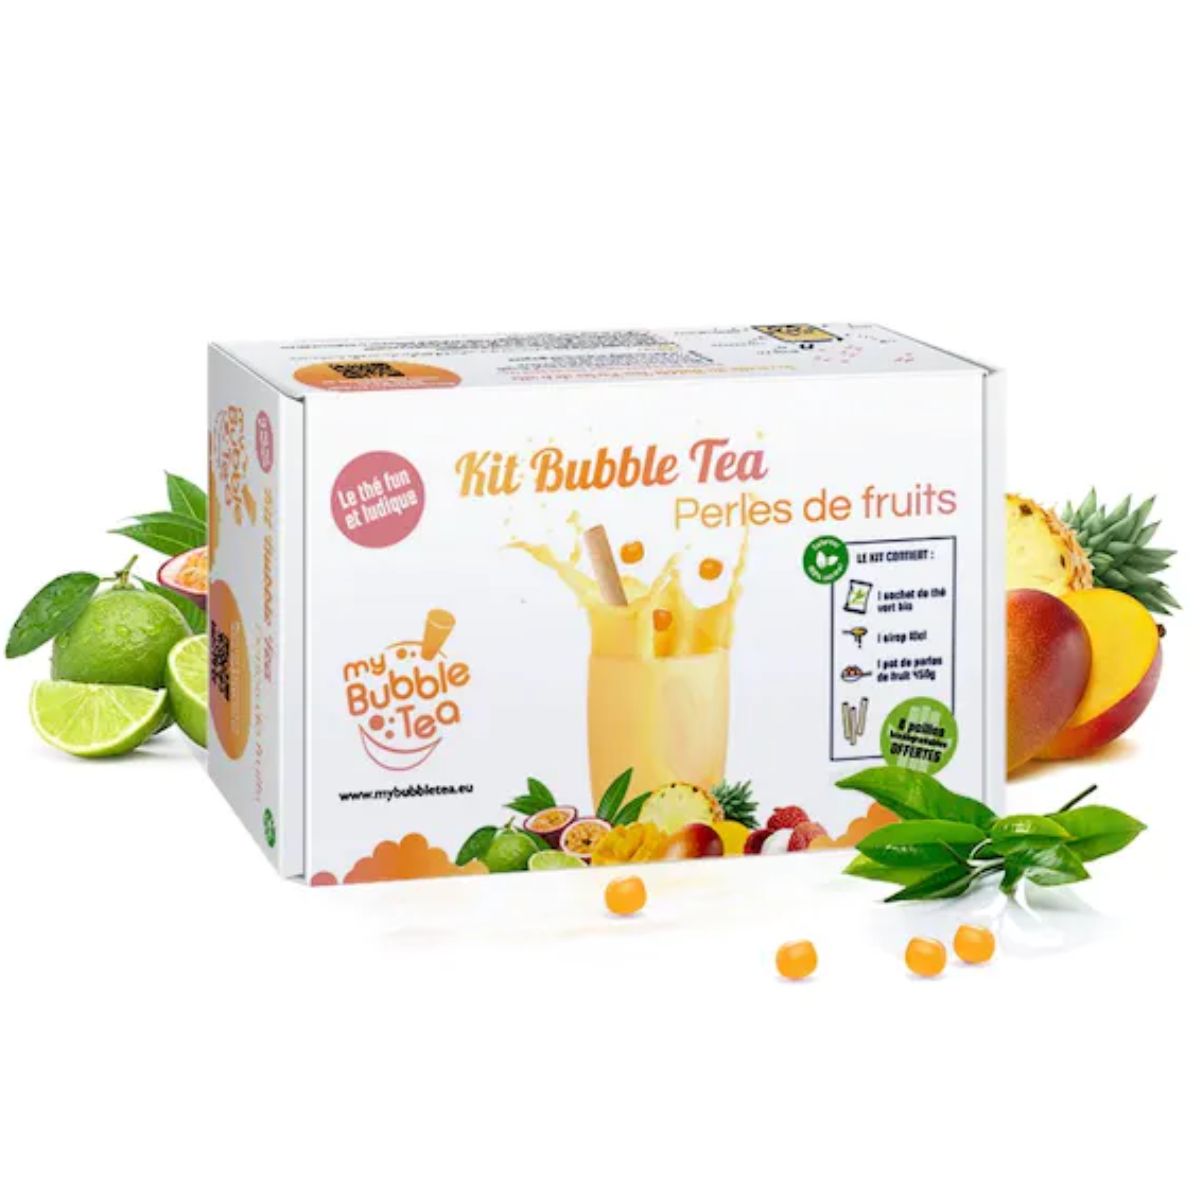 BUBBLE TEA KIT